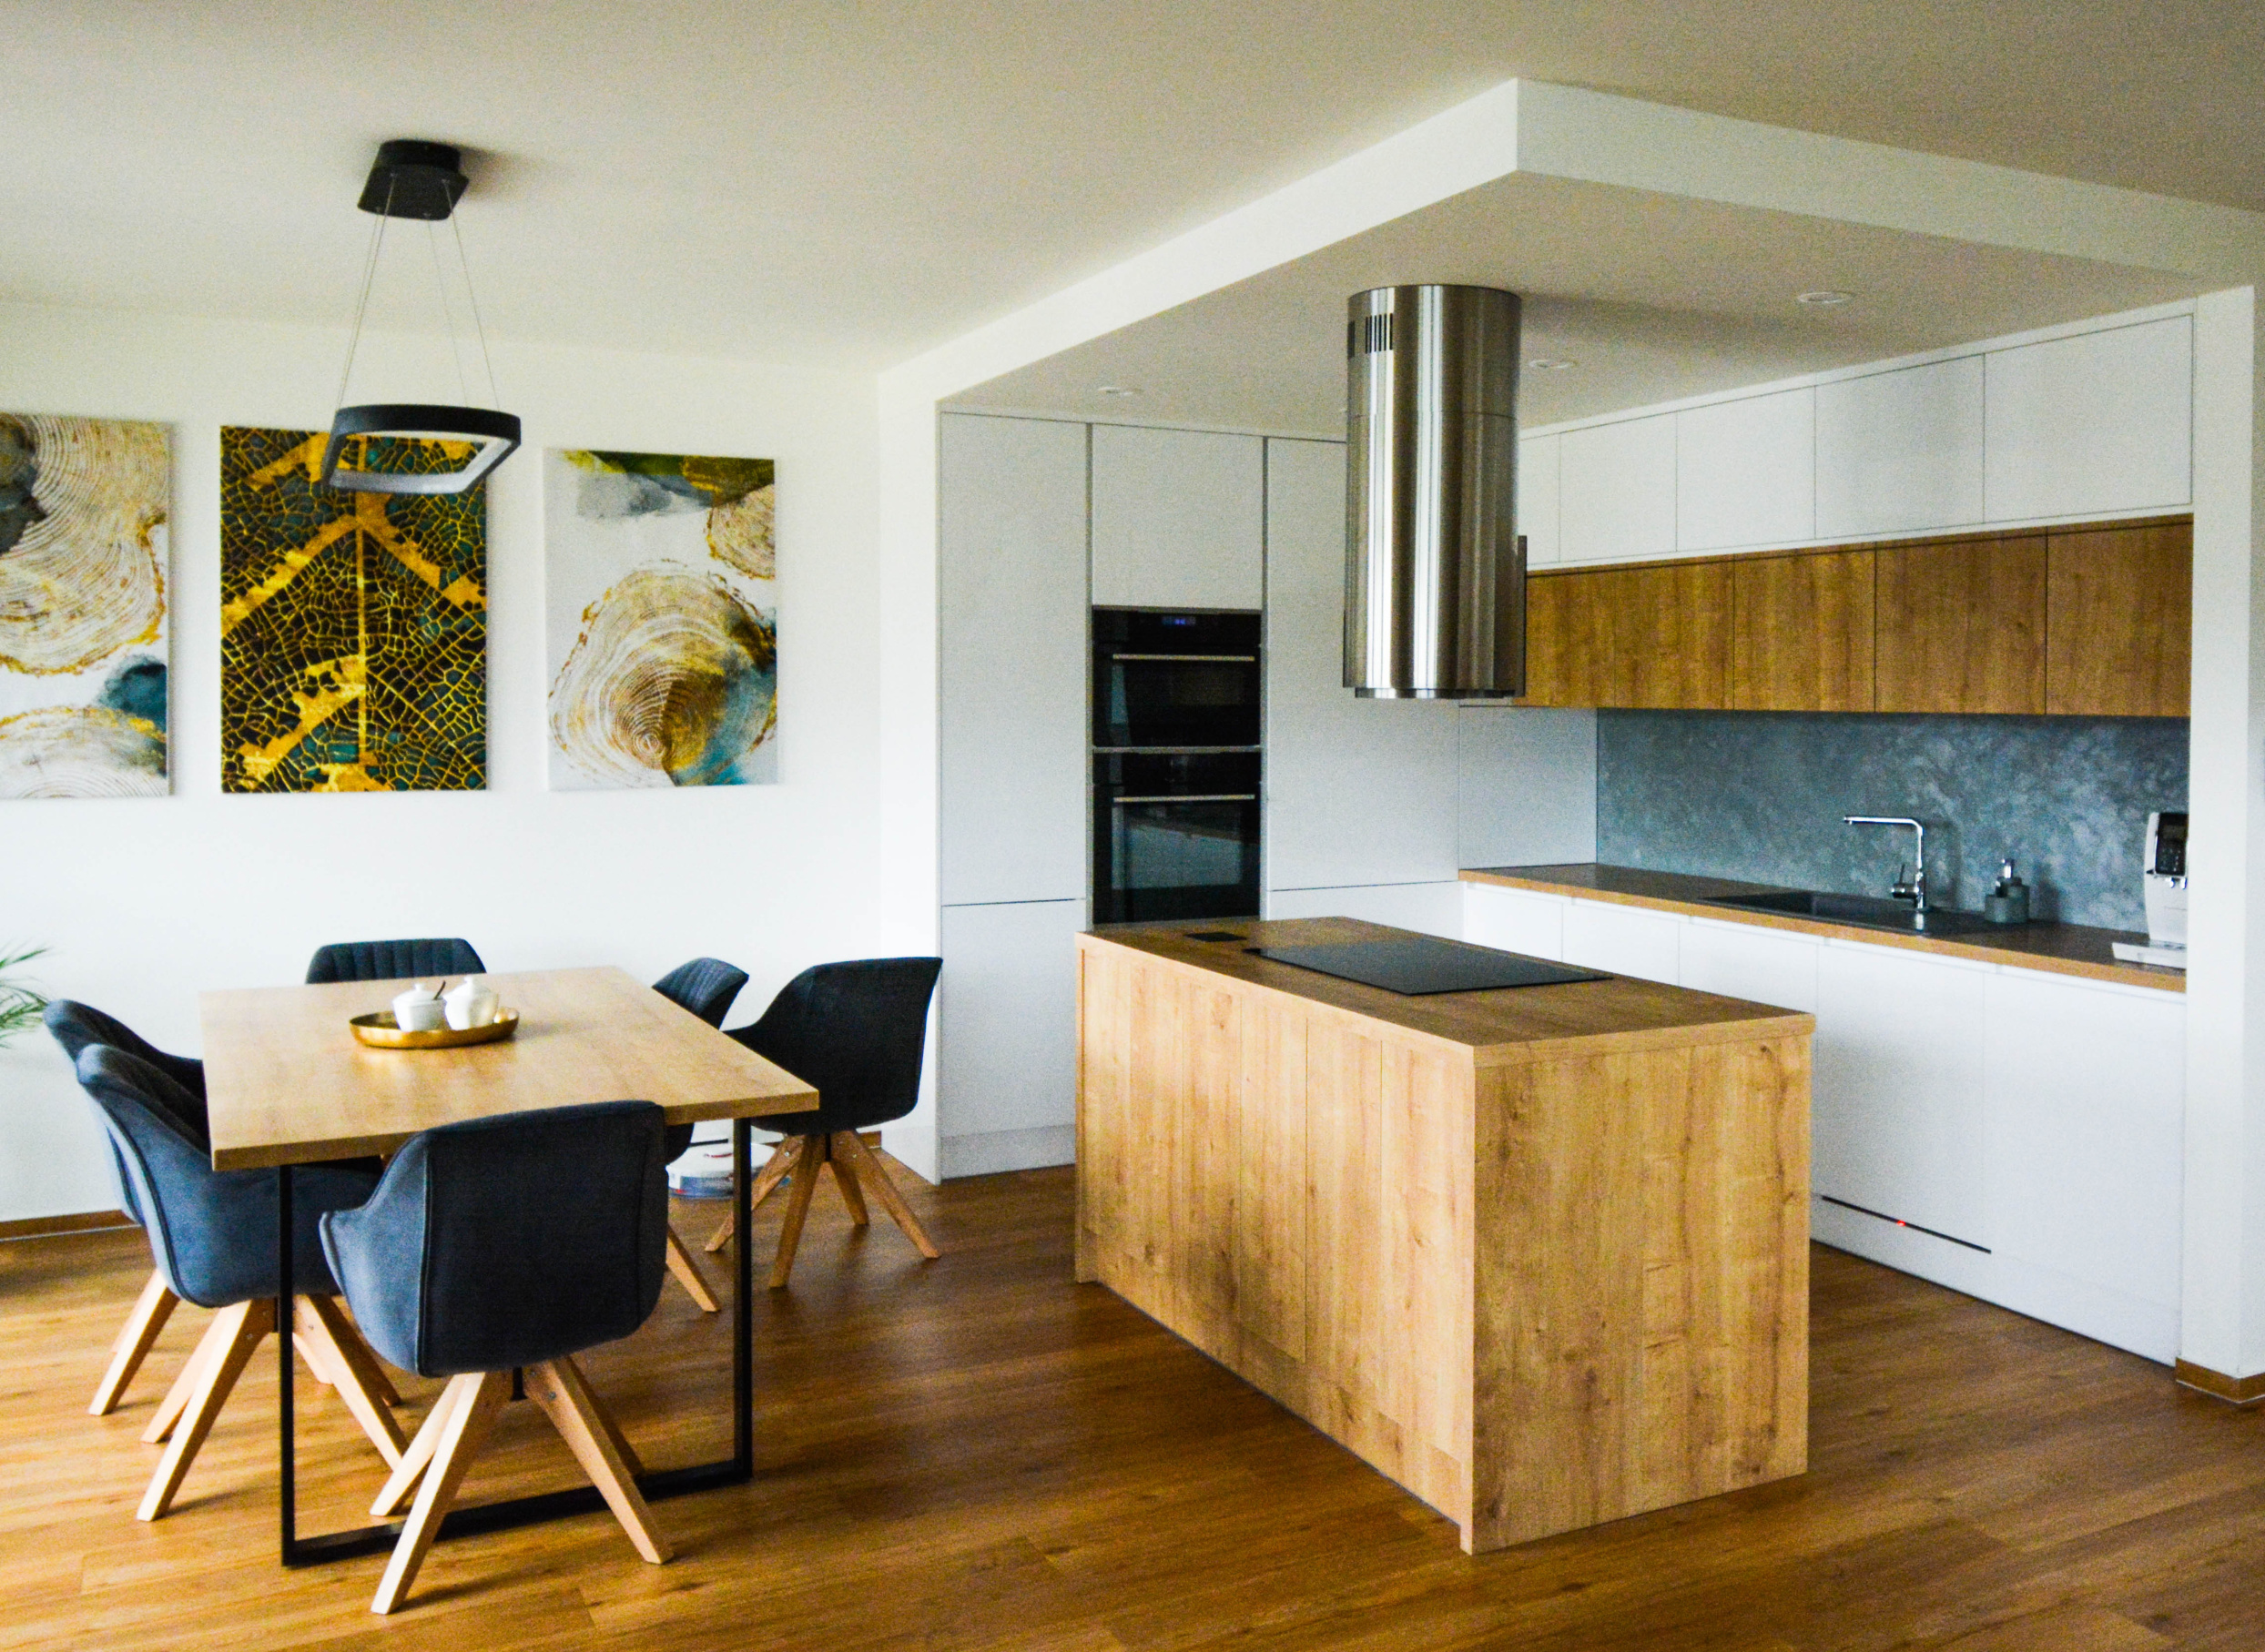 Moderní kuchyně v elegantních barvách. Sestava včetně stolu od Erzo design.